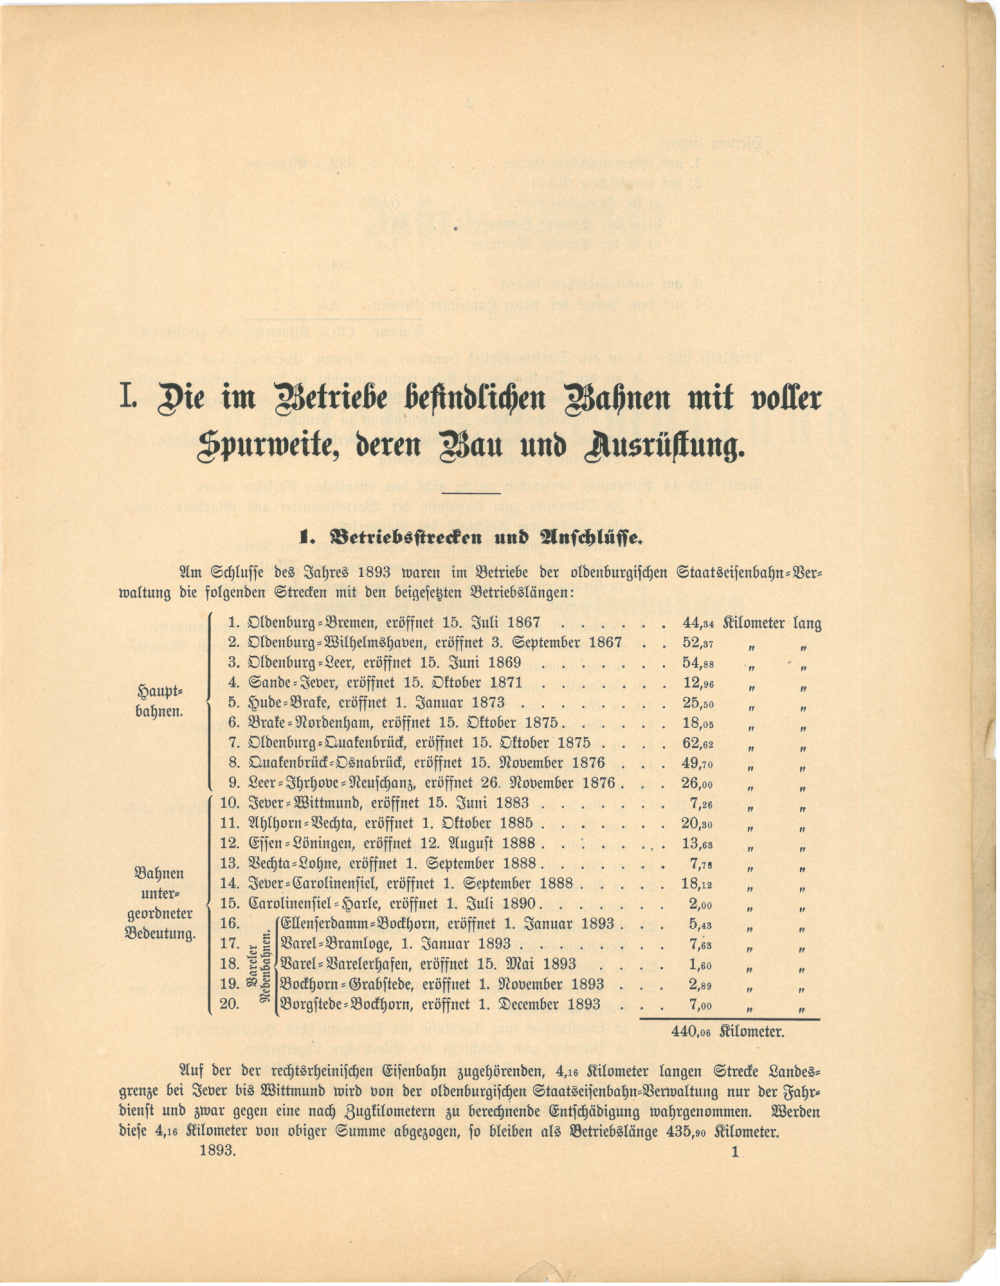 1893 - Jahresbericht Seite 1, Übersicht über die oldenburgischen Strecken